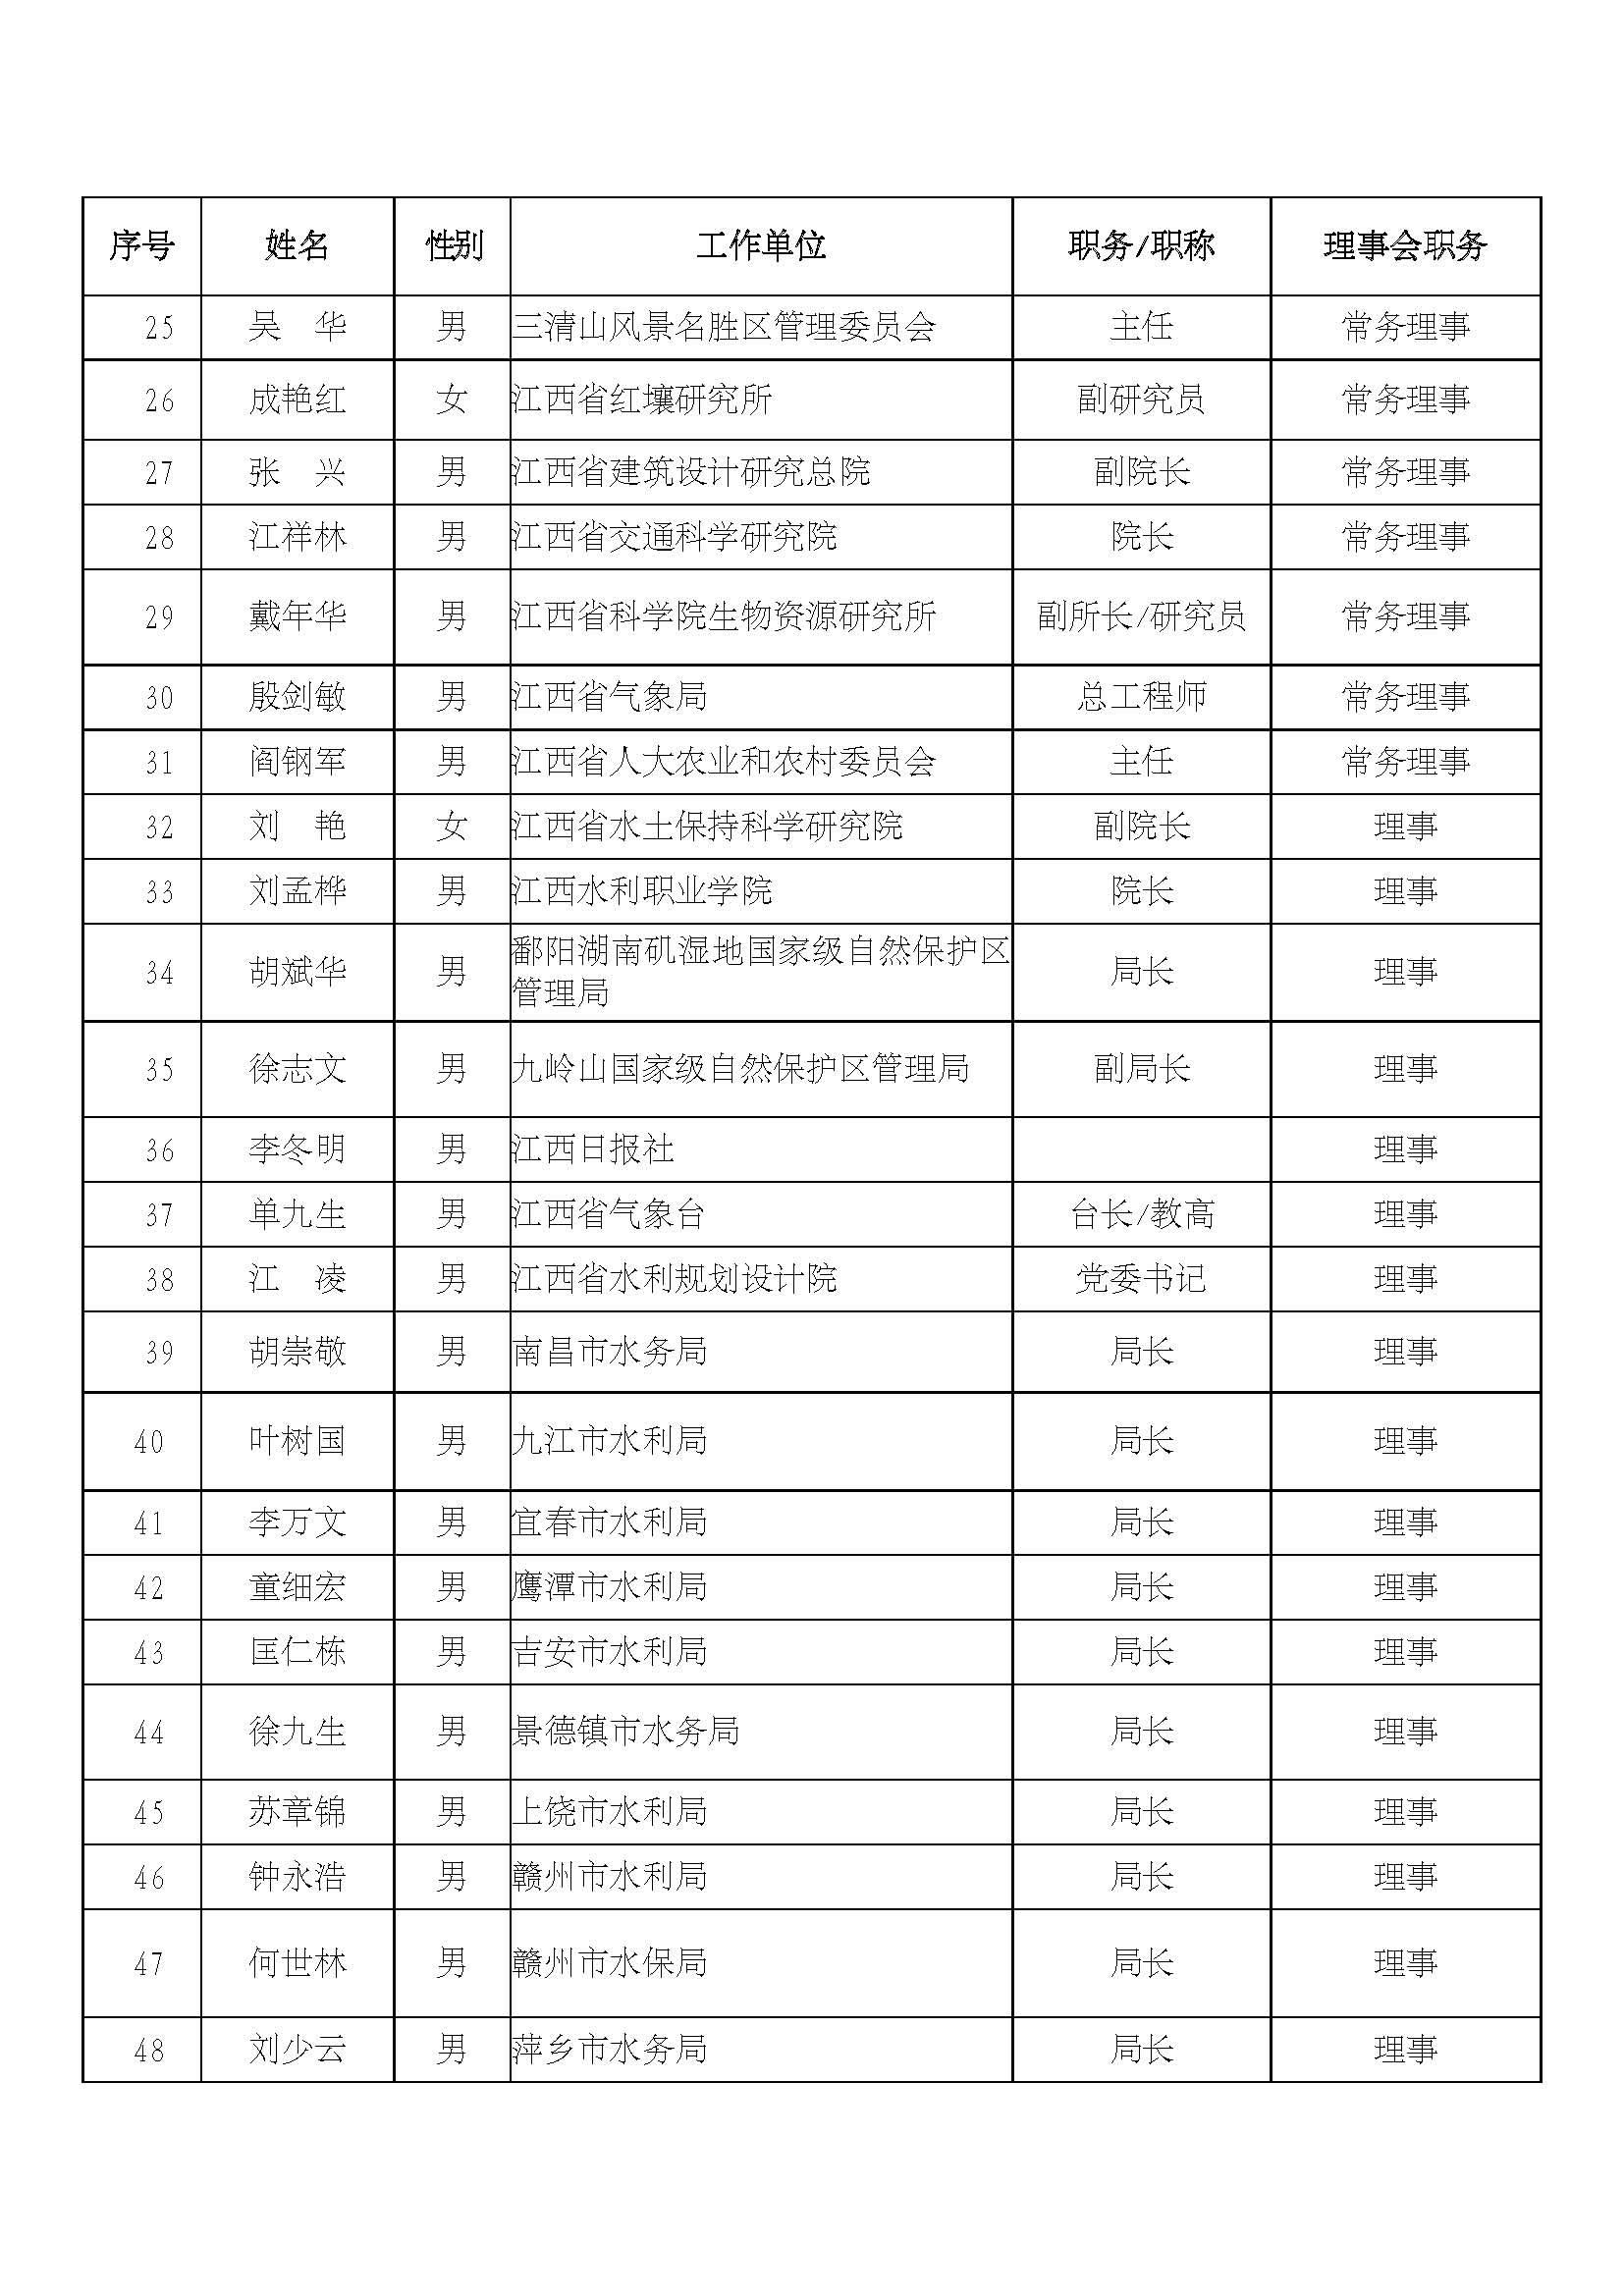 江西省生态文明研究与促进会第二届理事会名单_页面_2.jpg